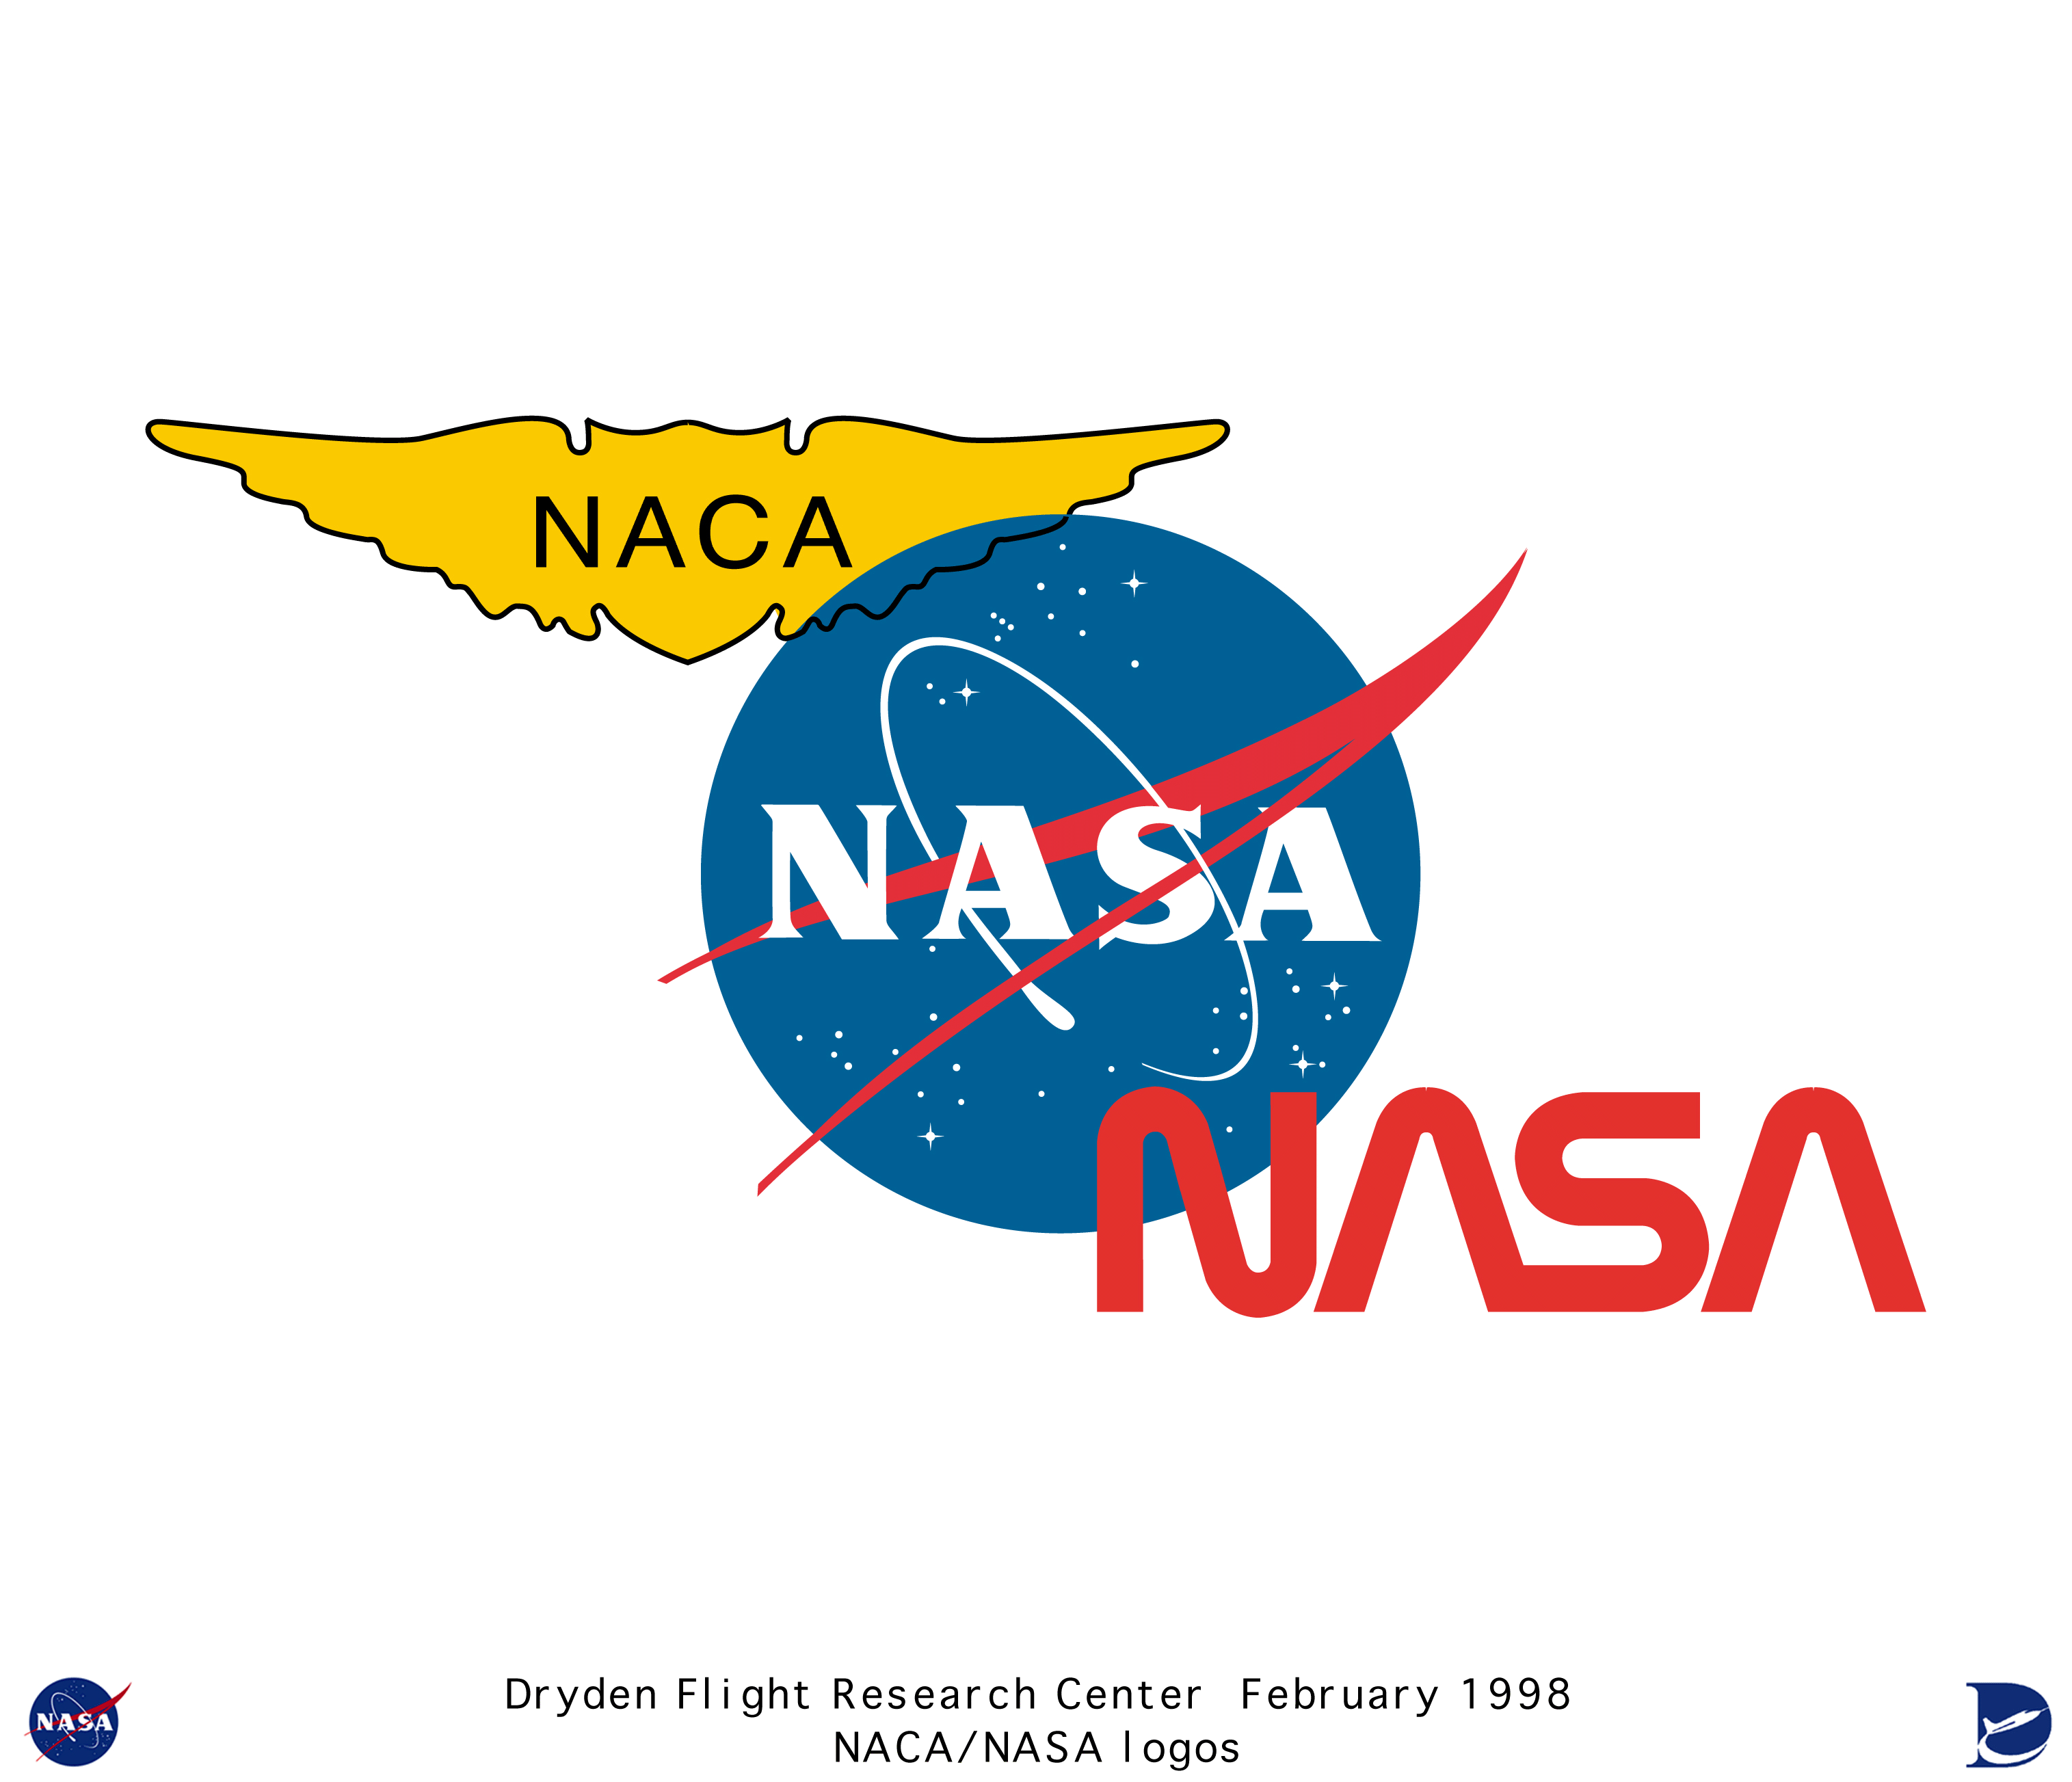 NACA Logo - Logos color_tri-logo: Color tri-logo (NACA, 2 NASA insignia)